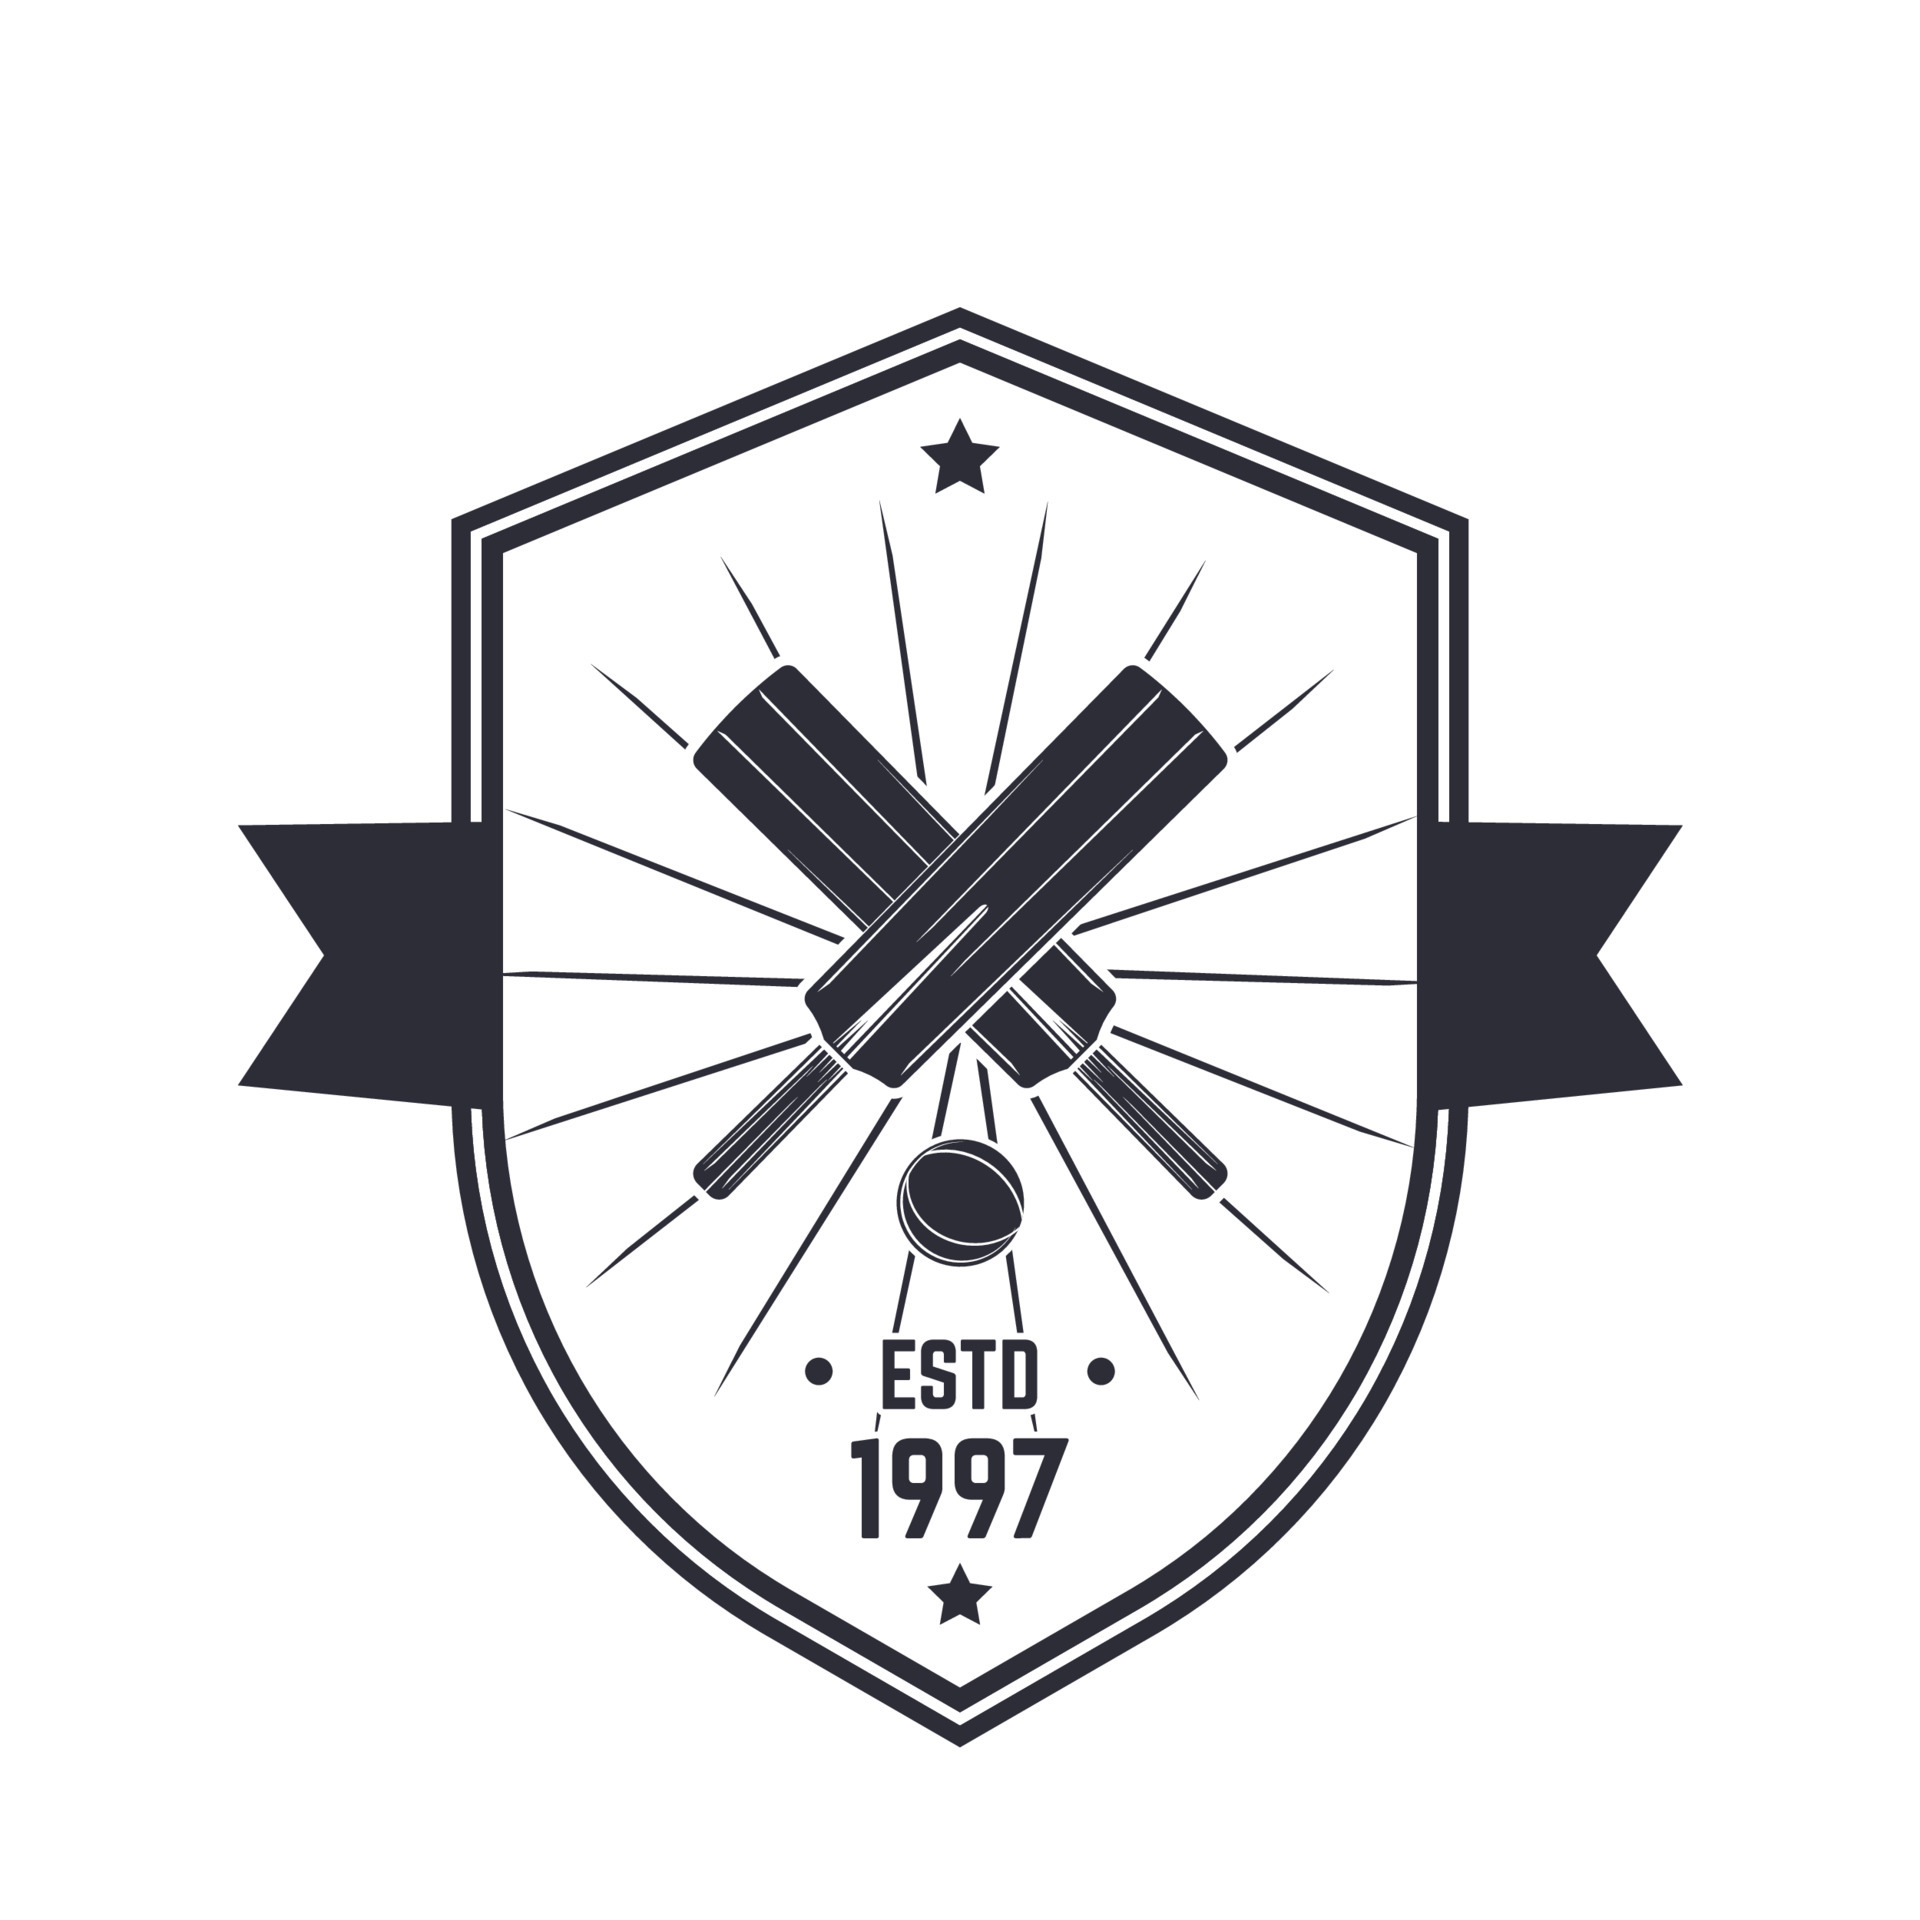 Cricket vintage logo, emblem on white 4508856 Vector Art at Vecteezy